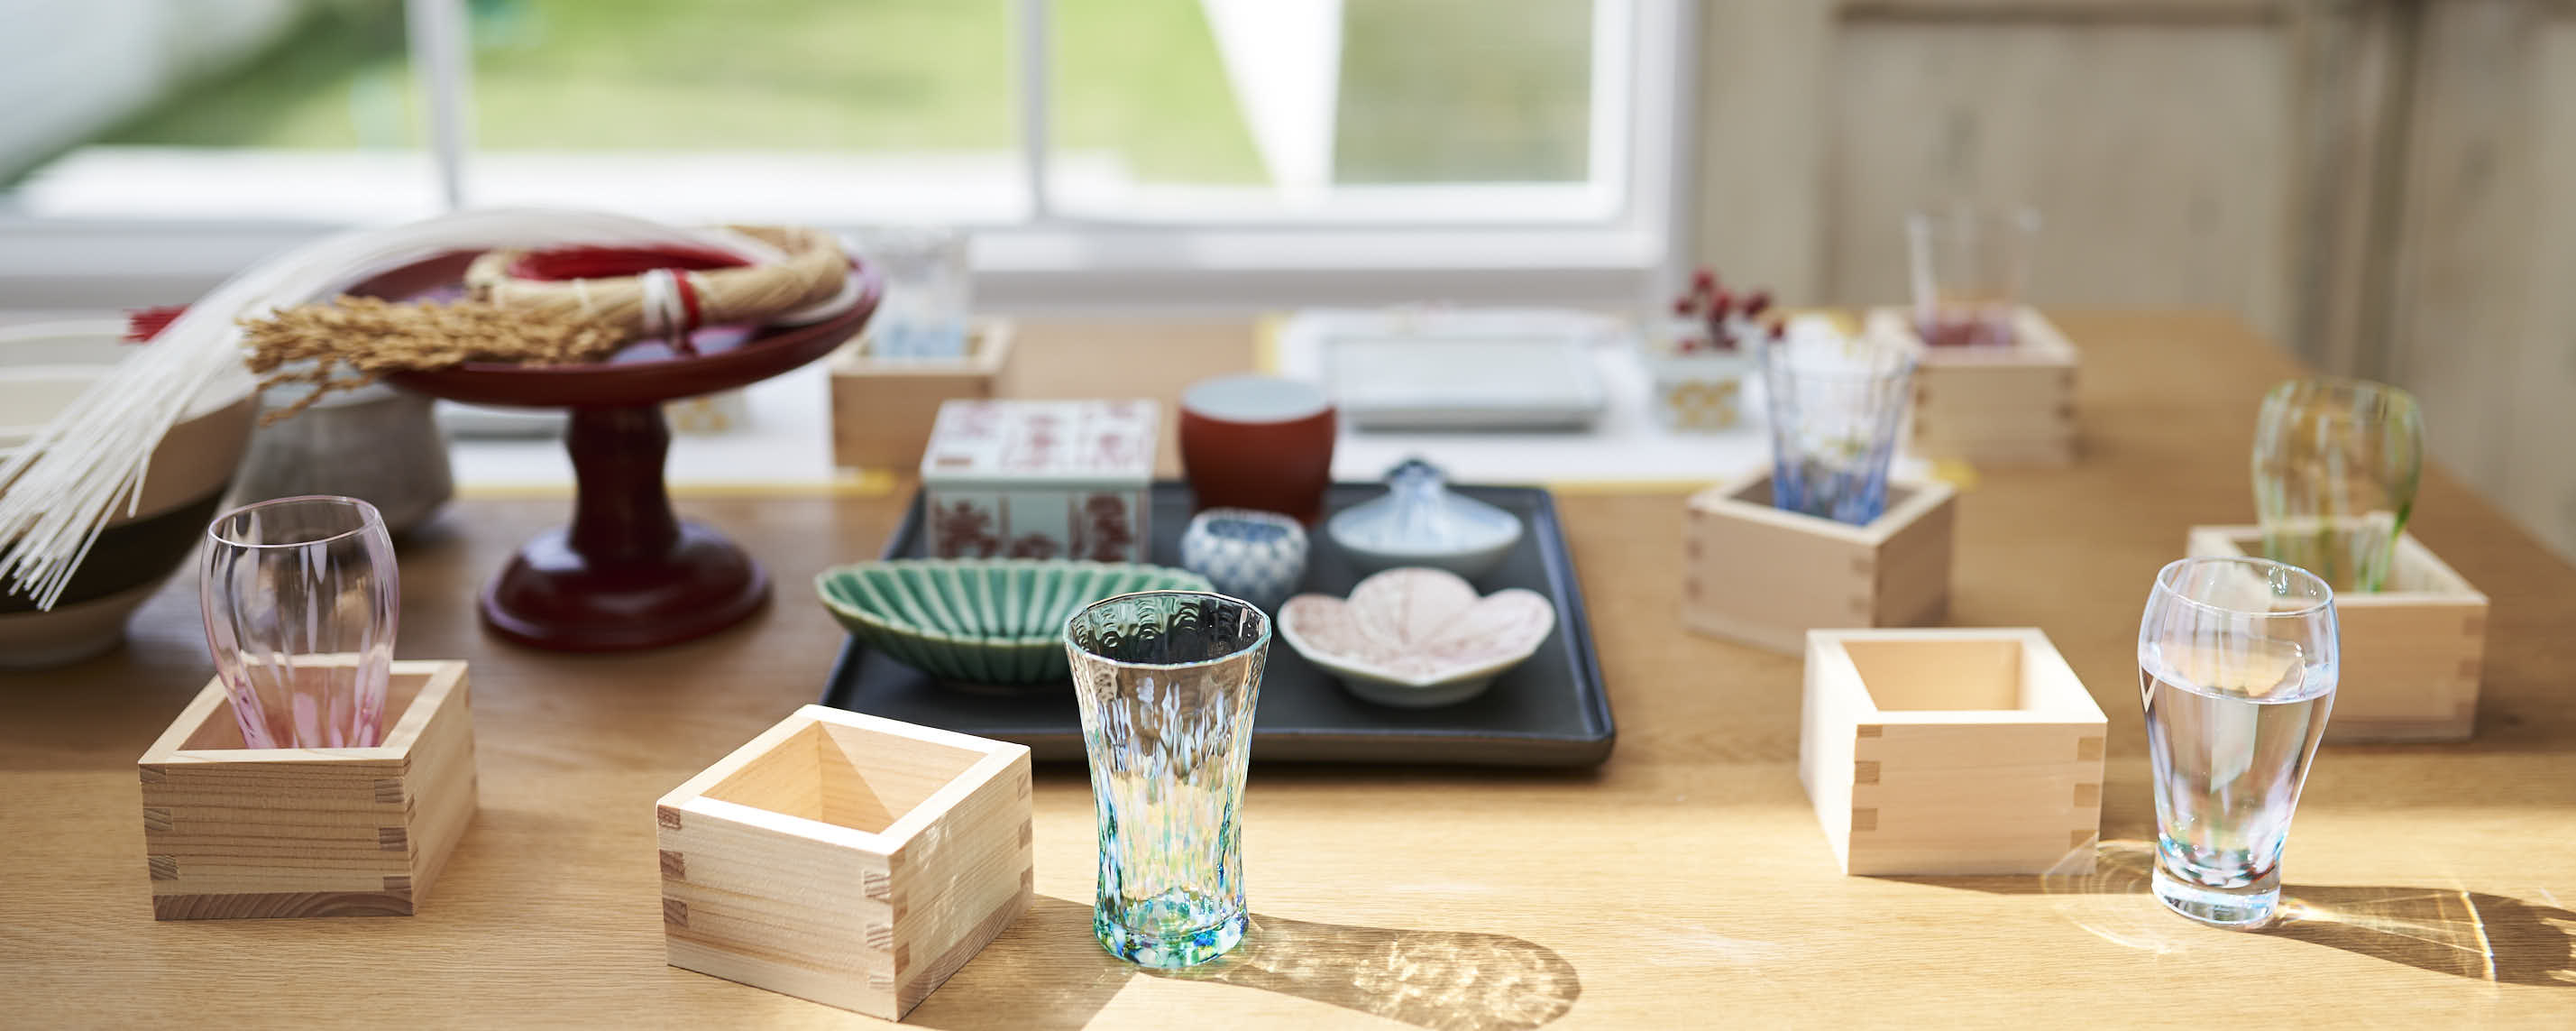 升 Masu - A Traditional Wooden Sake Box for Celebratory Occasion